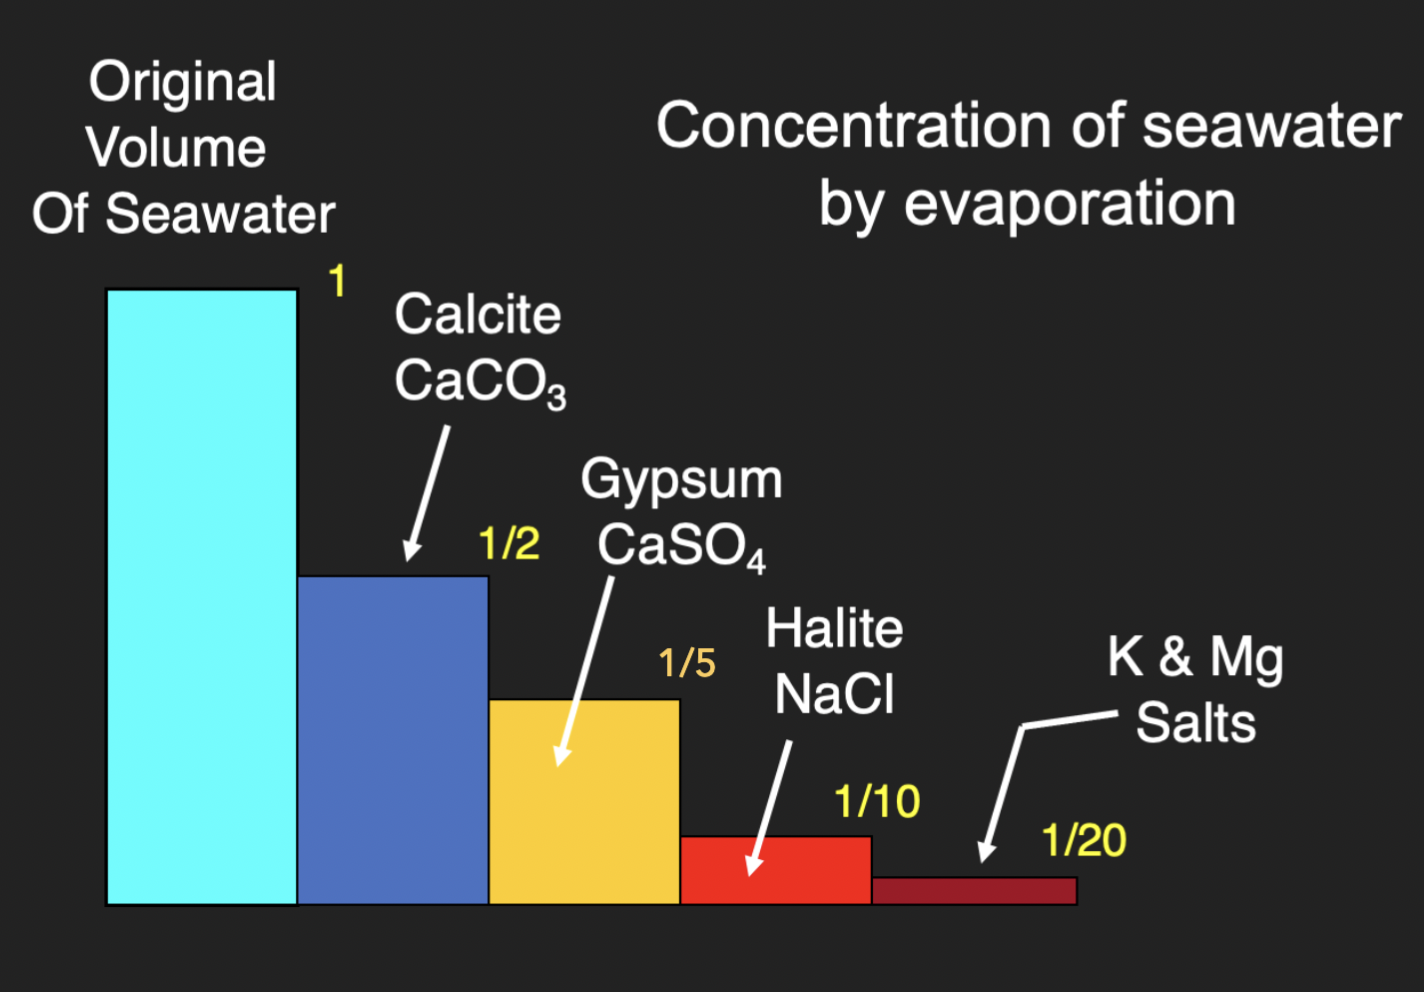 <ol><li><p>50% of seawater evaporated → <strong>Calcite</strong> (CaCo3)</p></li><li><p>80% of seawater evaporated → <strong>Gypsum</strong> (CaSO4 . 2H2O)</p></li><li><p>90% of seawater evaporated → <strong>Halite</strong> (NaCl)</p></li><li><p>95% of seawater evaporated → <strong>K + Mg salts </strong></p></li></ol>